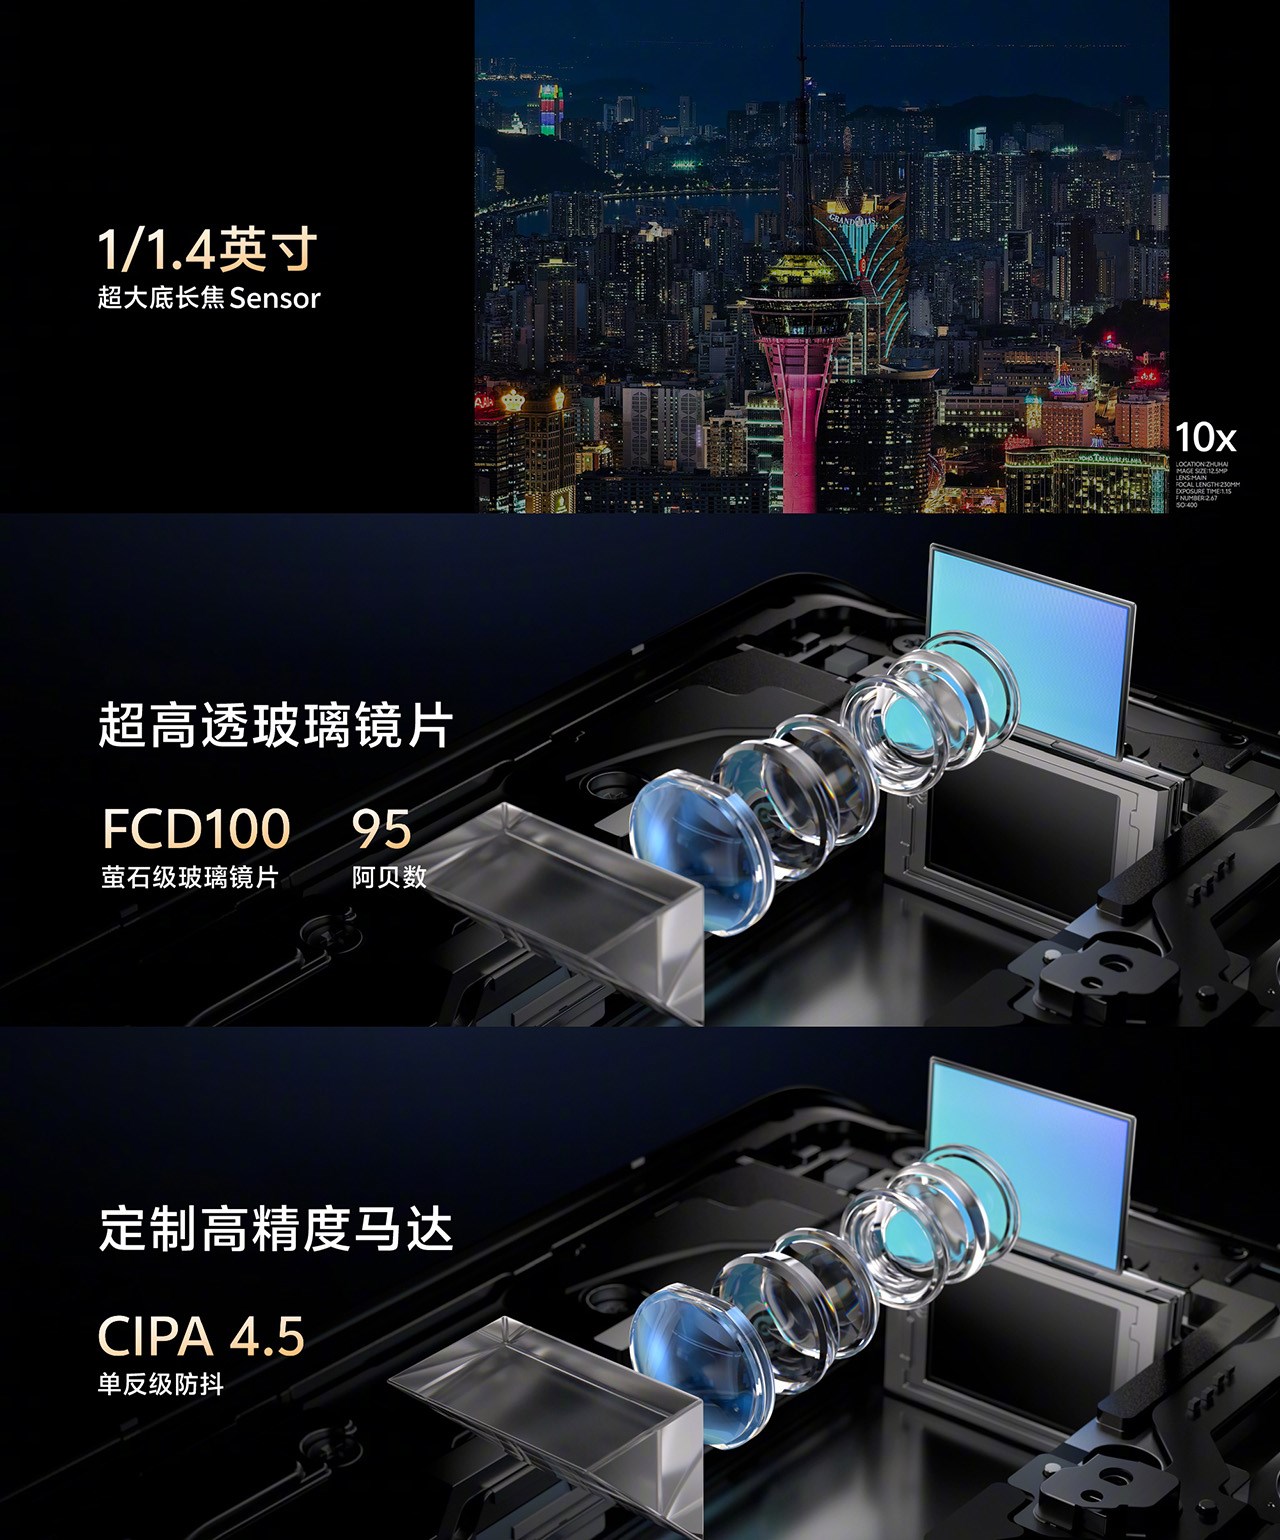 Camera tele trên Vivo X100 Ultra được trang bị cảm biến Samsung HP9 200 MP